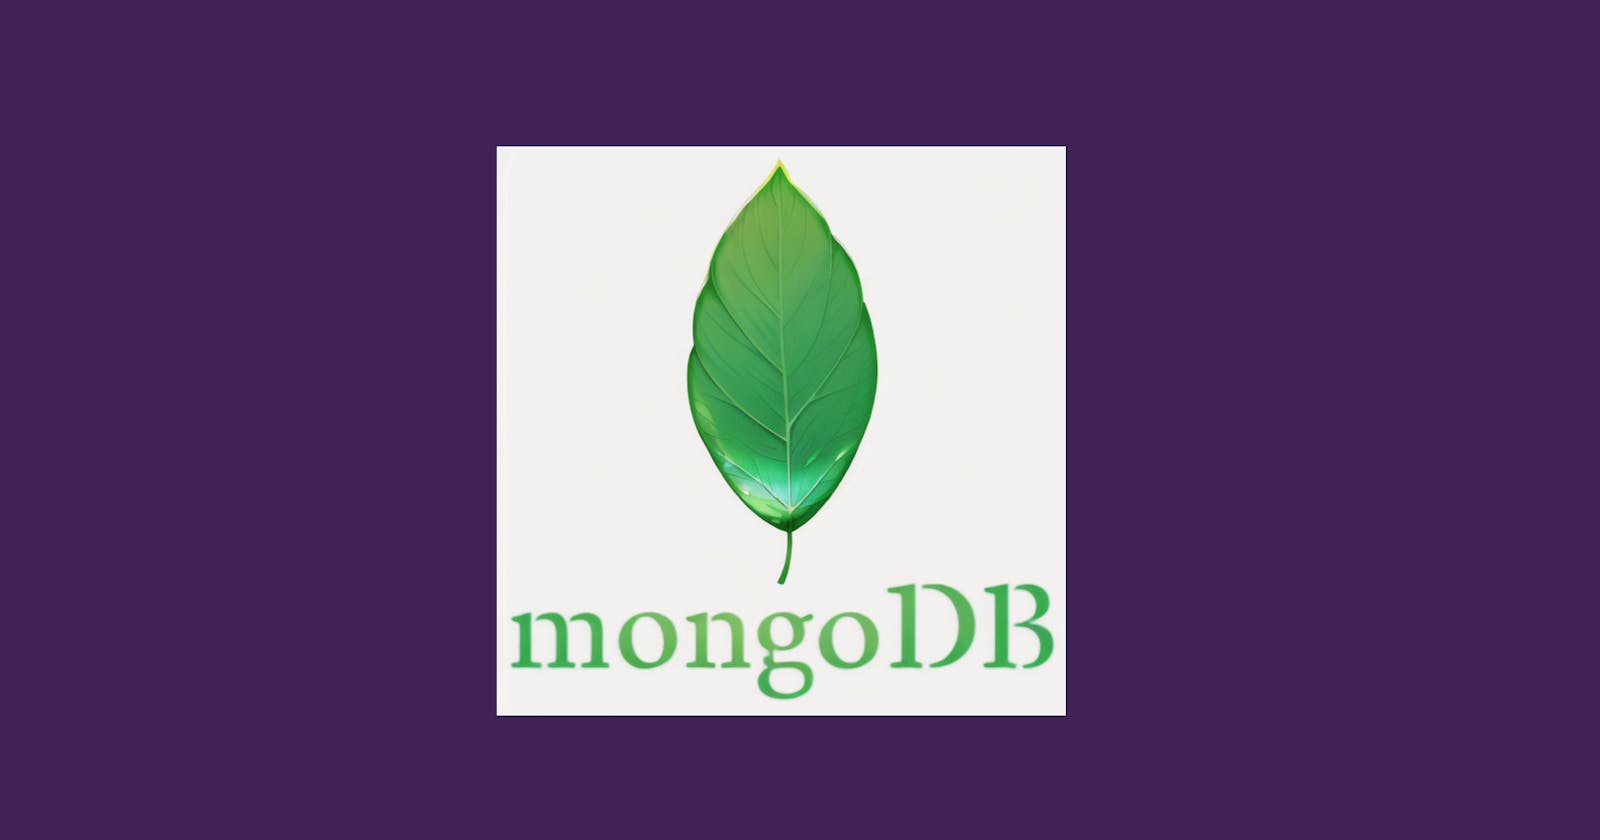 Let's look inside the "MongoDB" database world.